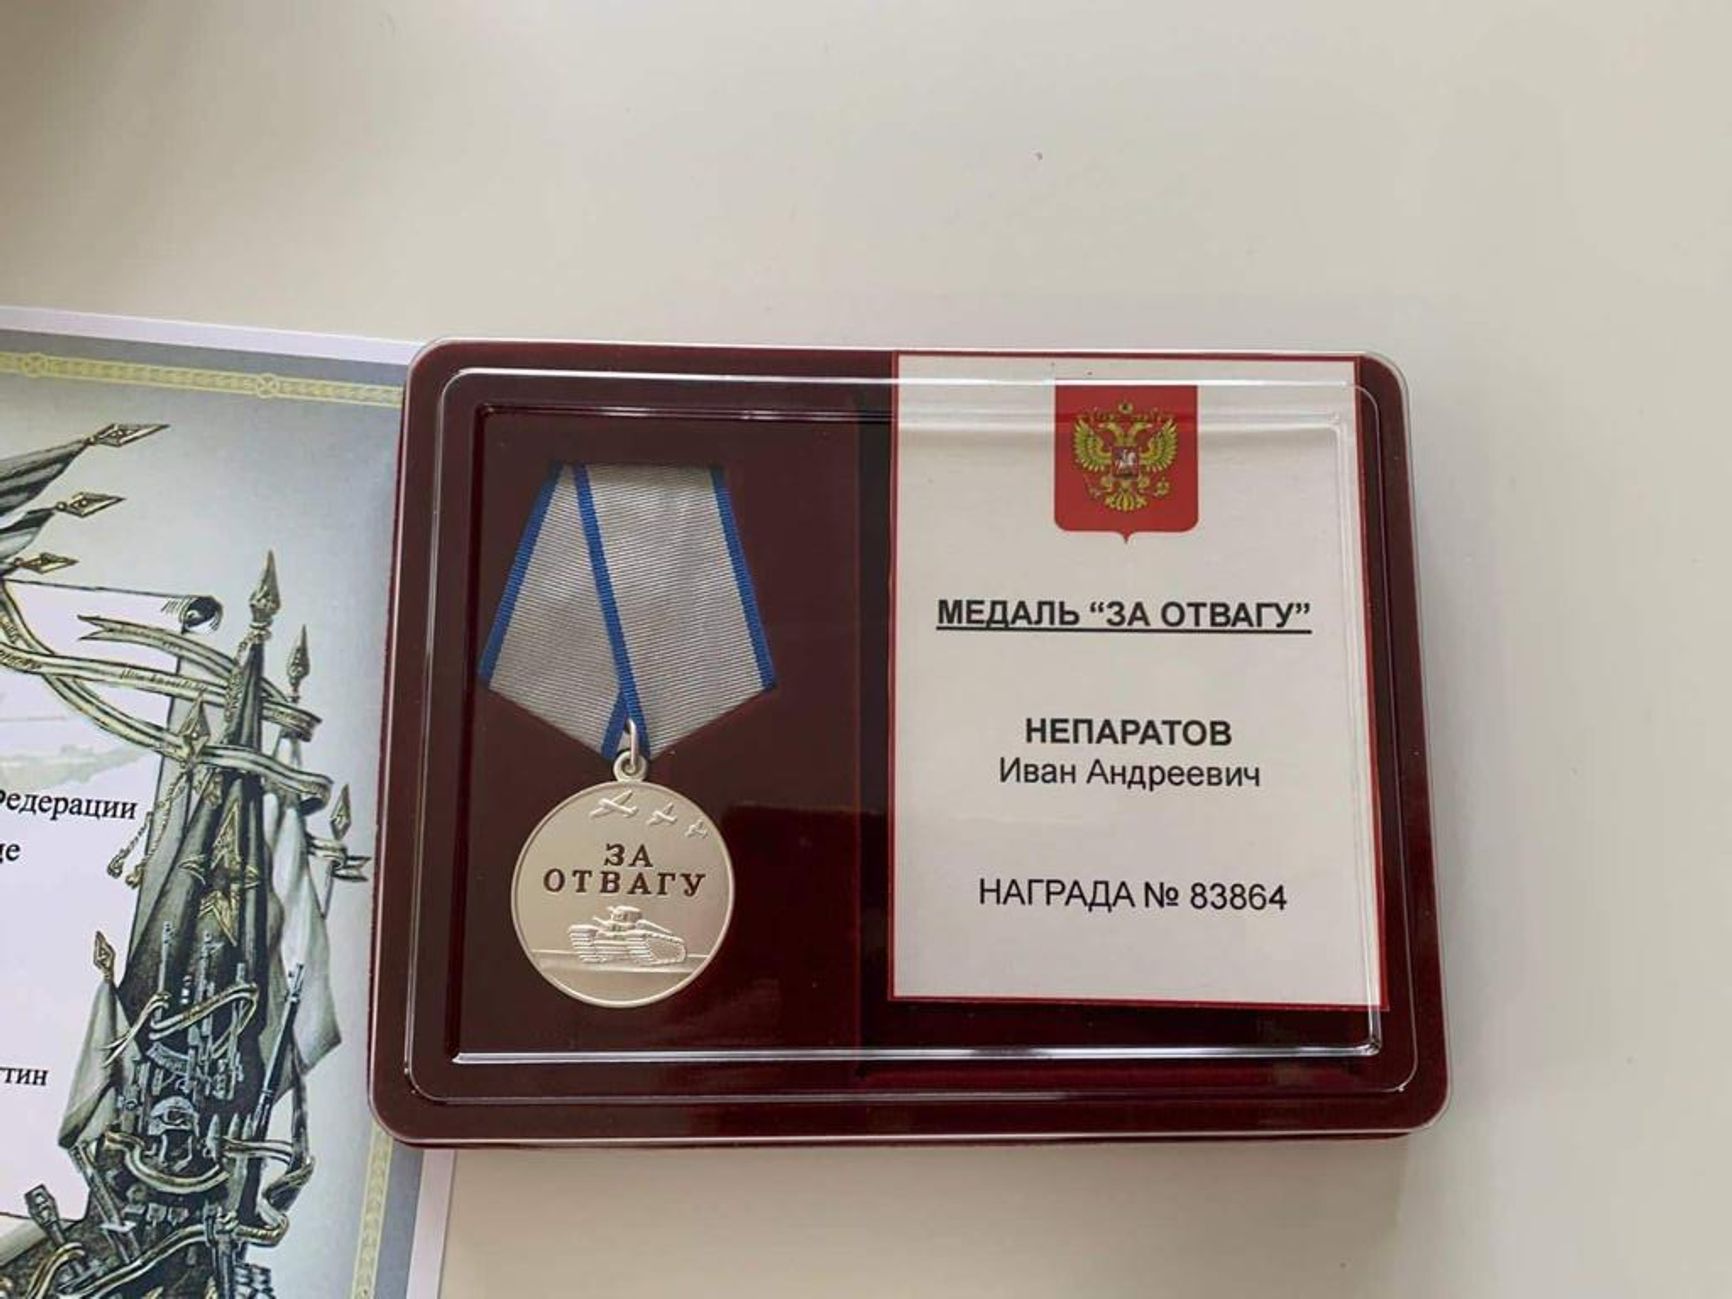 Главарь банды, осужденный на 25 лет за убийства, посмертно получил от Путина медаль «За отвагу» за участие в войне в Украине